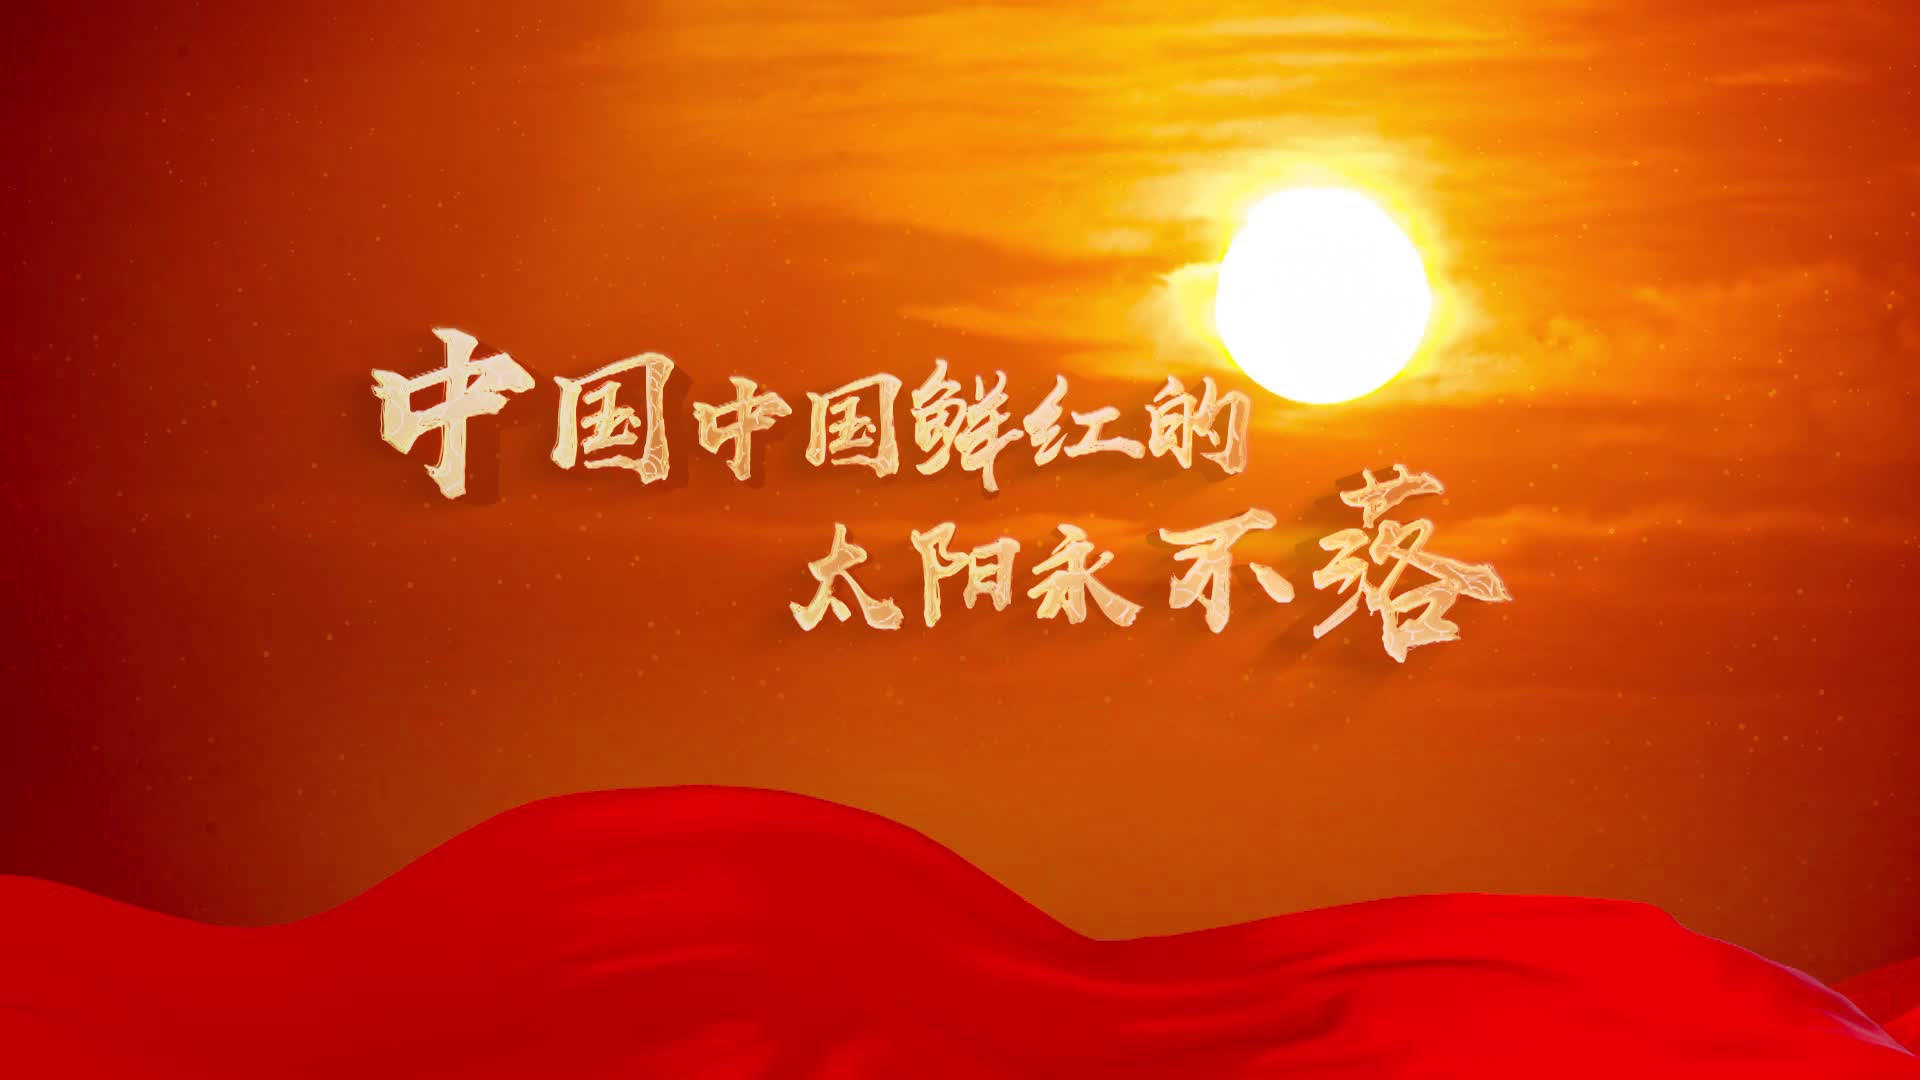 歌曲中国中国鲜红的太阳永不落led背景